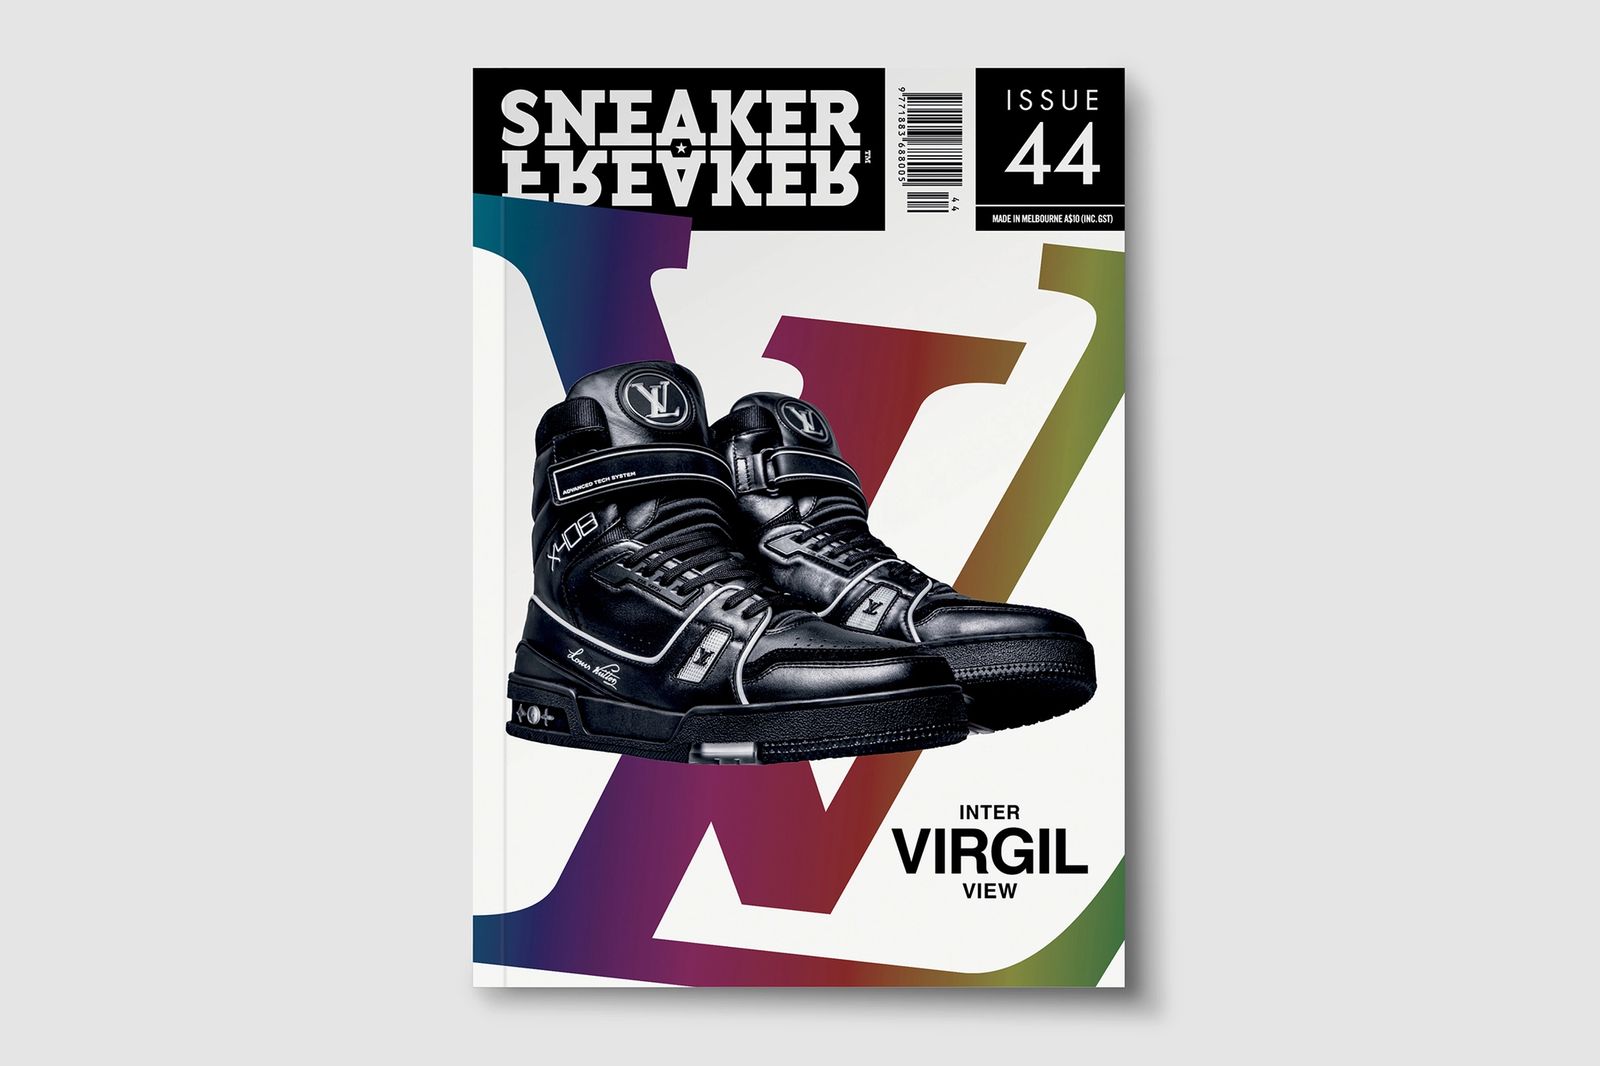 Louis Vuitton X408 fibre optic, Luxury, Sneakers & Footwear on